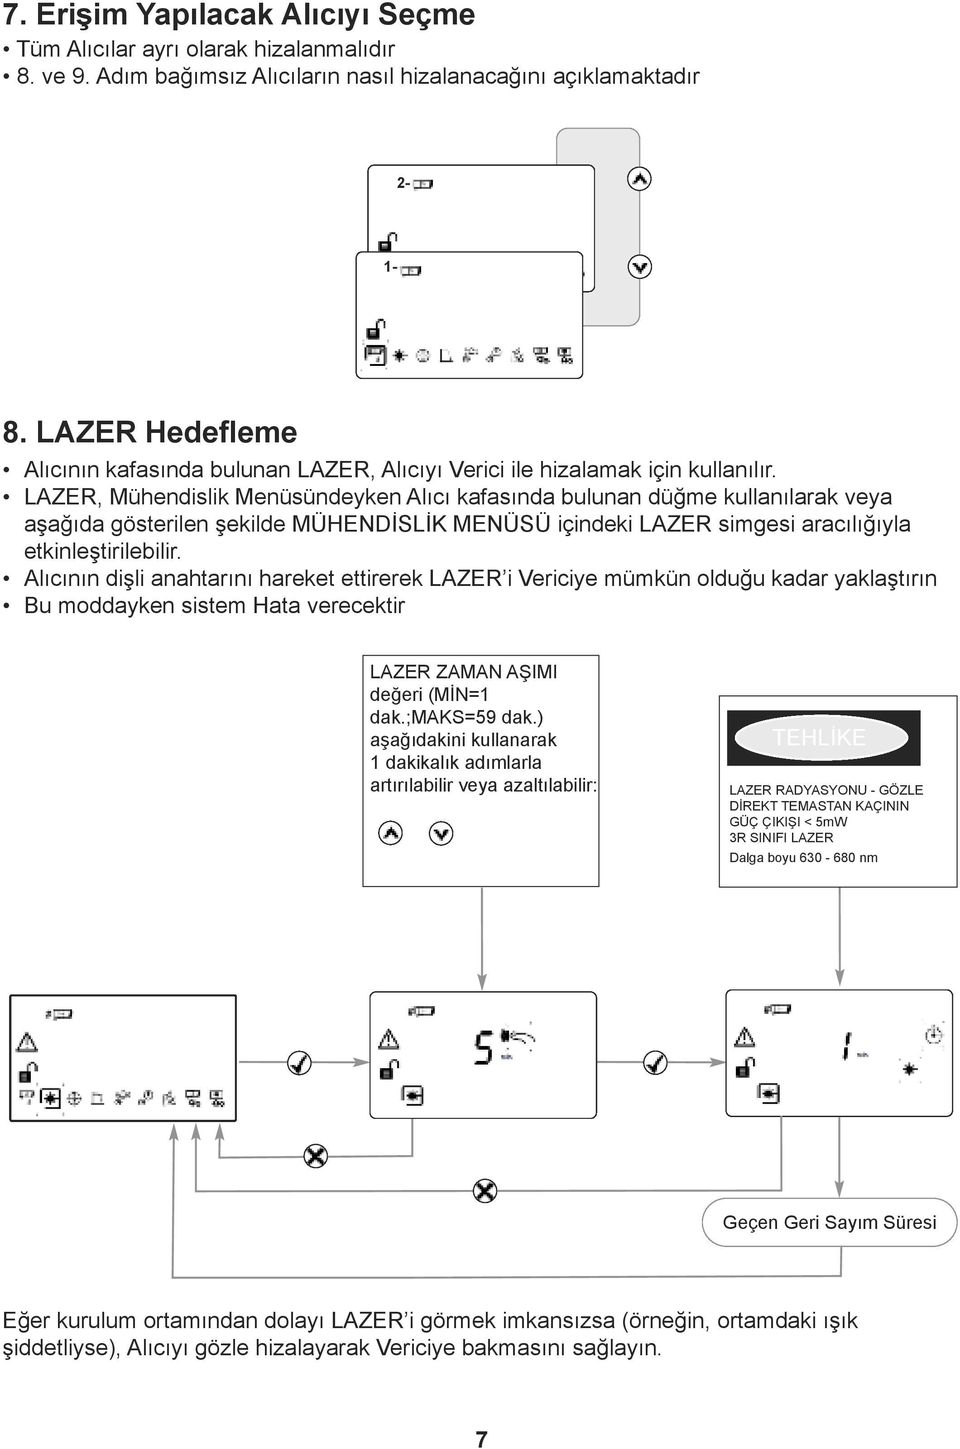 LAZER, Mühendislik Menüsündeyken Alıcı kafasında bulunan düğme kullanılarak veya aşağıda gösterilen şekilde MÜHENDİSLİK MENÜSÜ içindeki LAZER simgesi aracılığıyla etkinleştirilebilir.